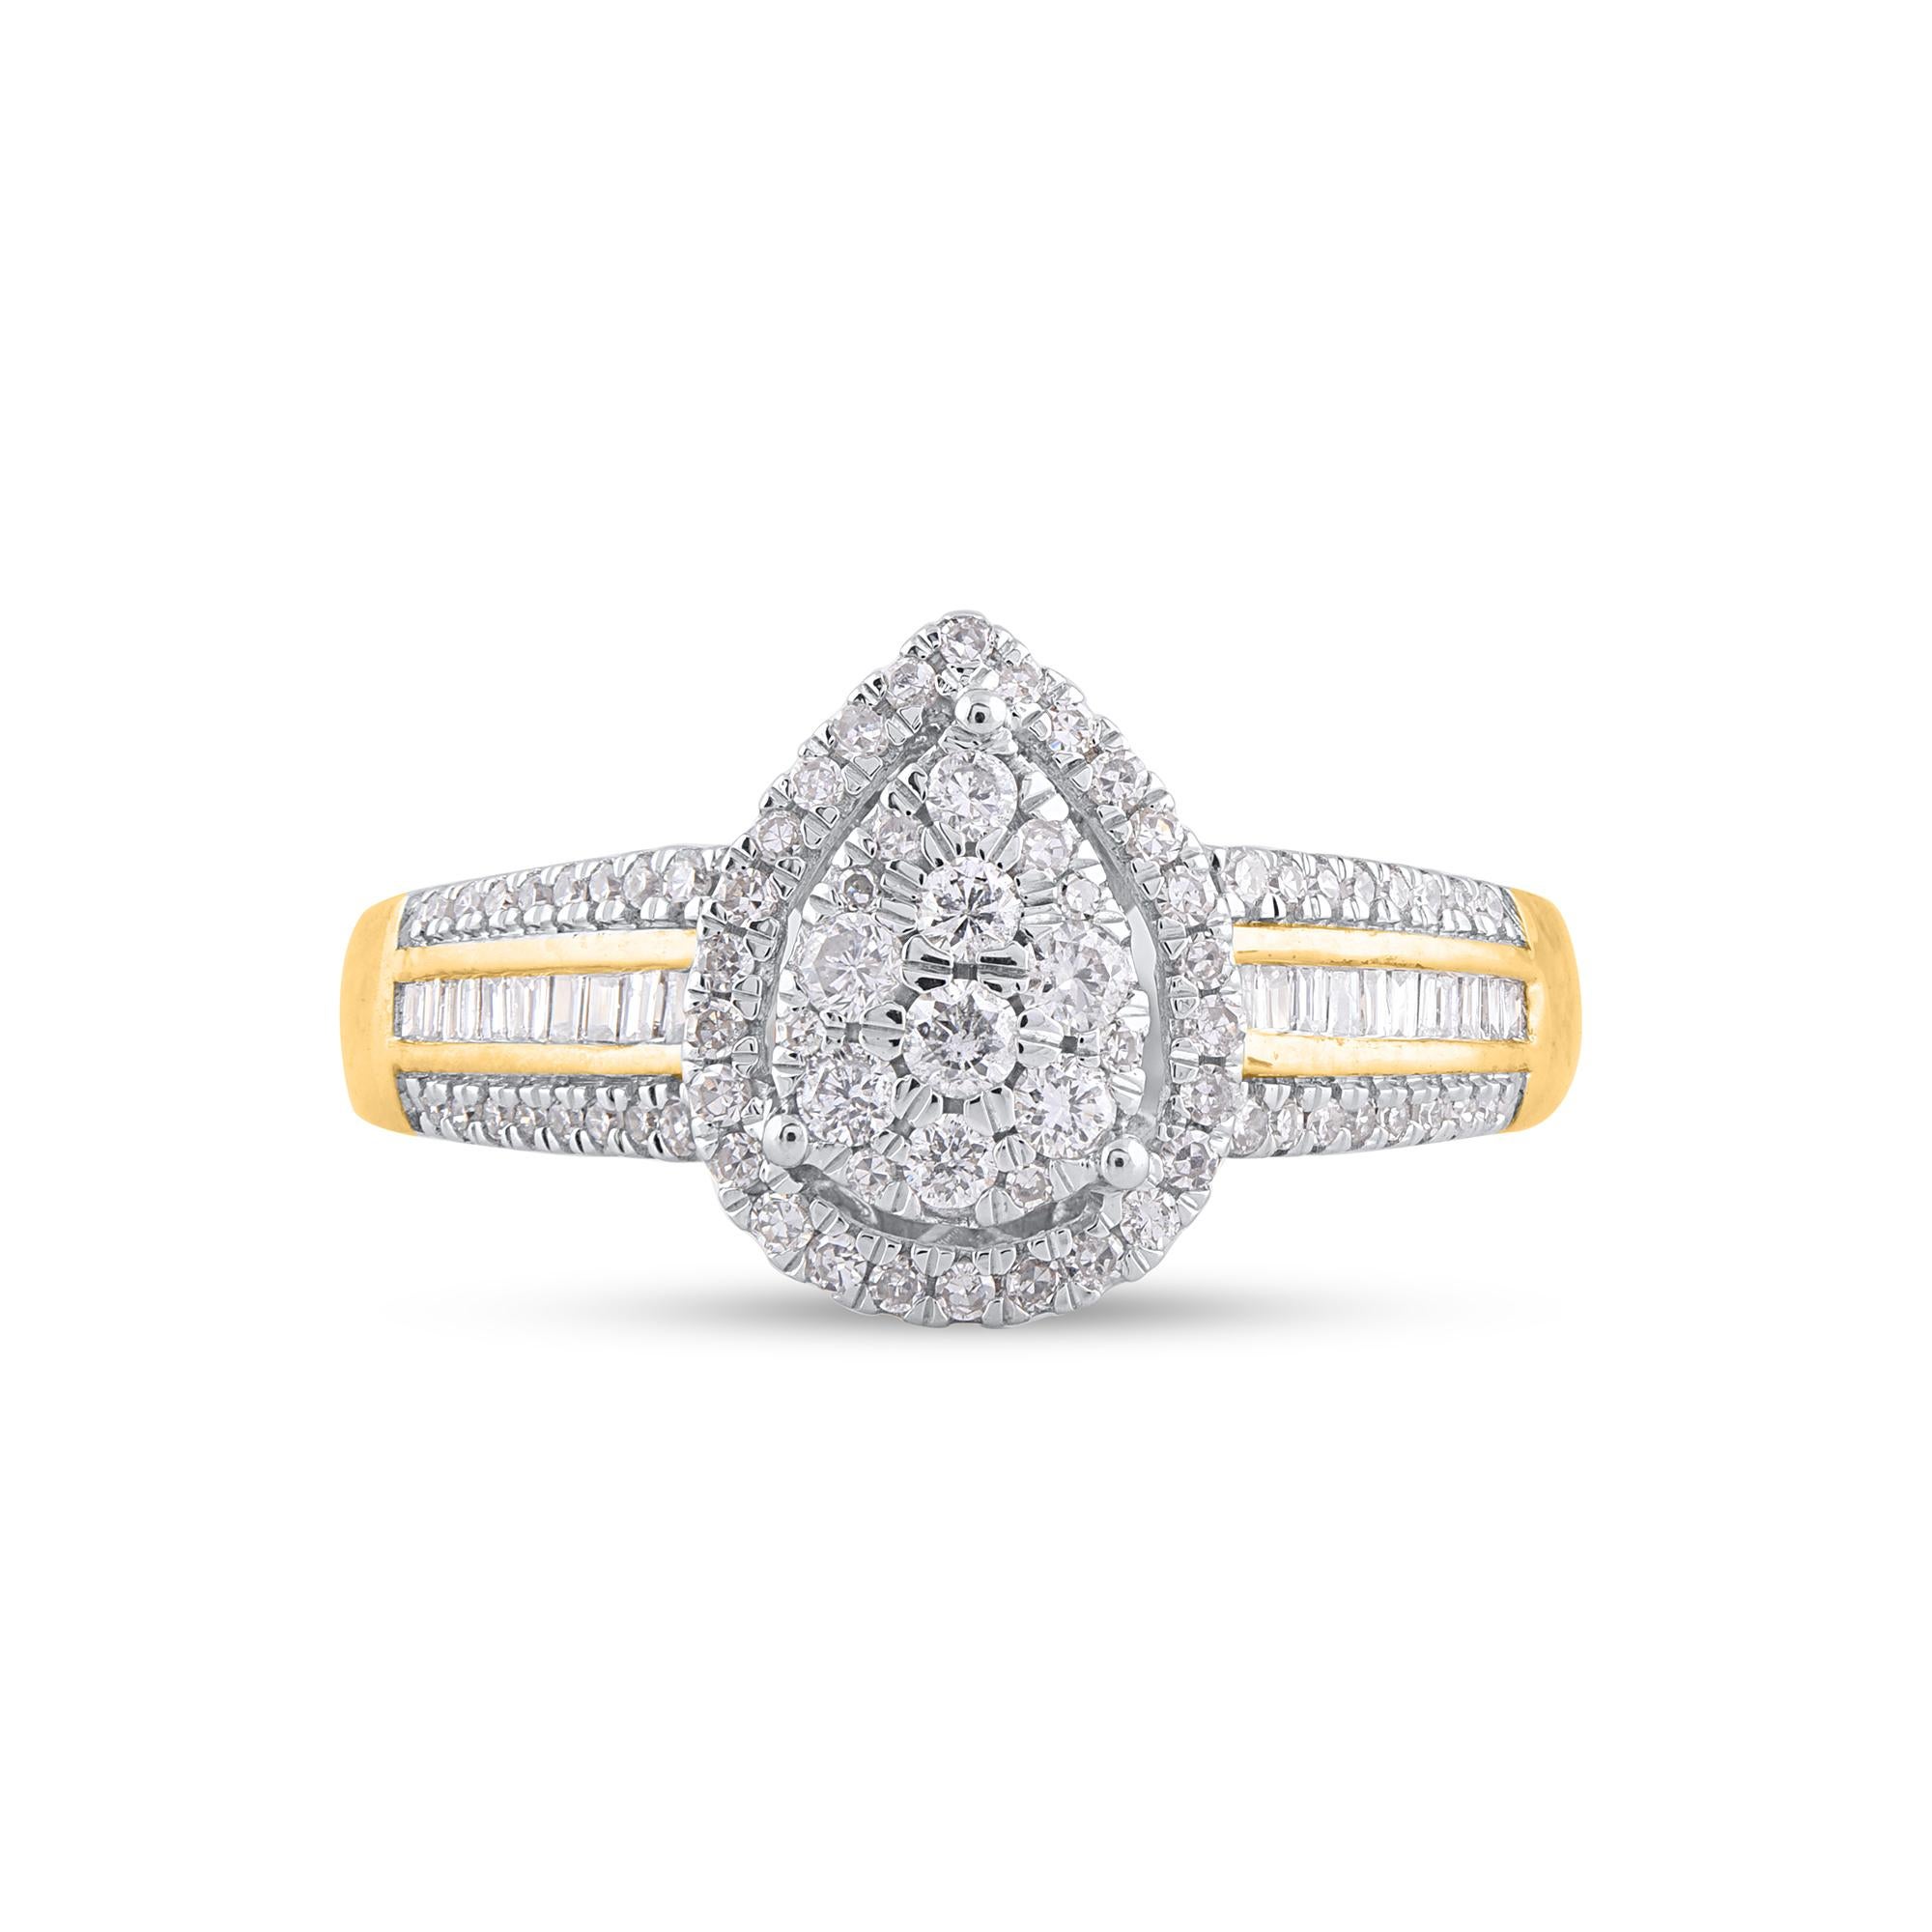 Gewinnen Sie ihr Herz mit diesem klassischen und eleganten Diamantring. Der Diamantring ist aus 14 Karat Gelbgold gefertigt und mit 92 Diamanten im Einzel-, Brillant- und Baguetteschliff in Zacken- und Kanalfassung besetzt. Die Farbe H-I, die